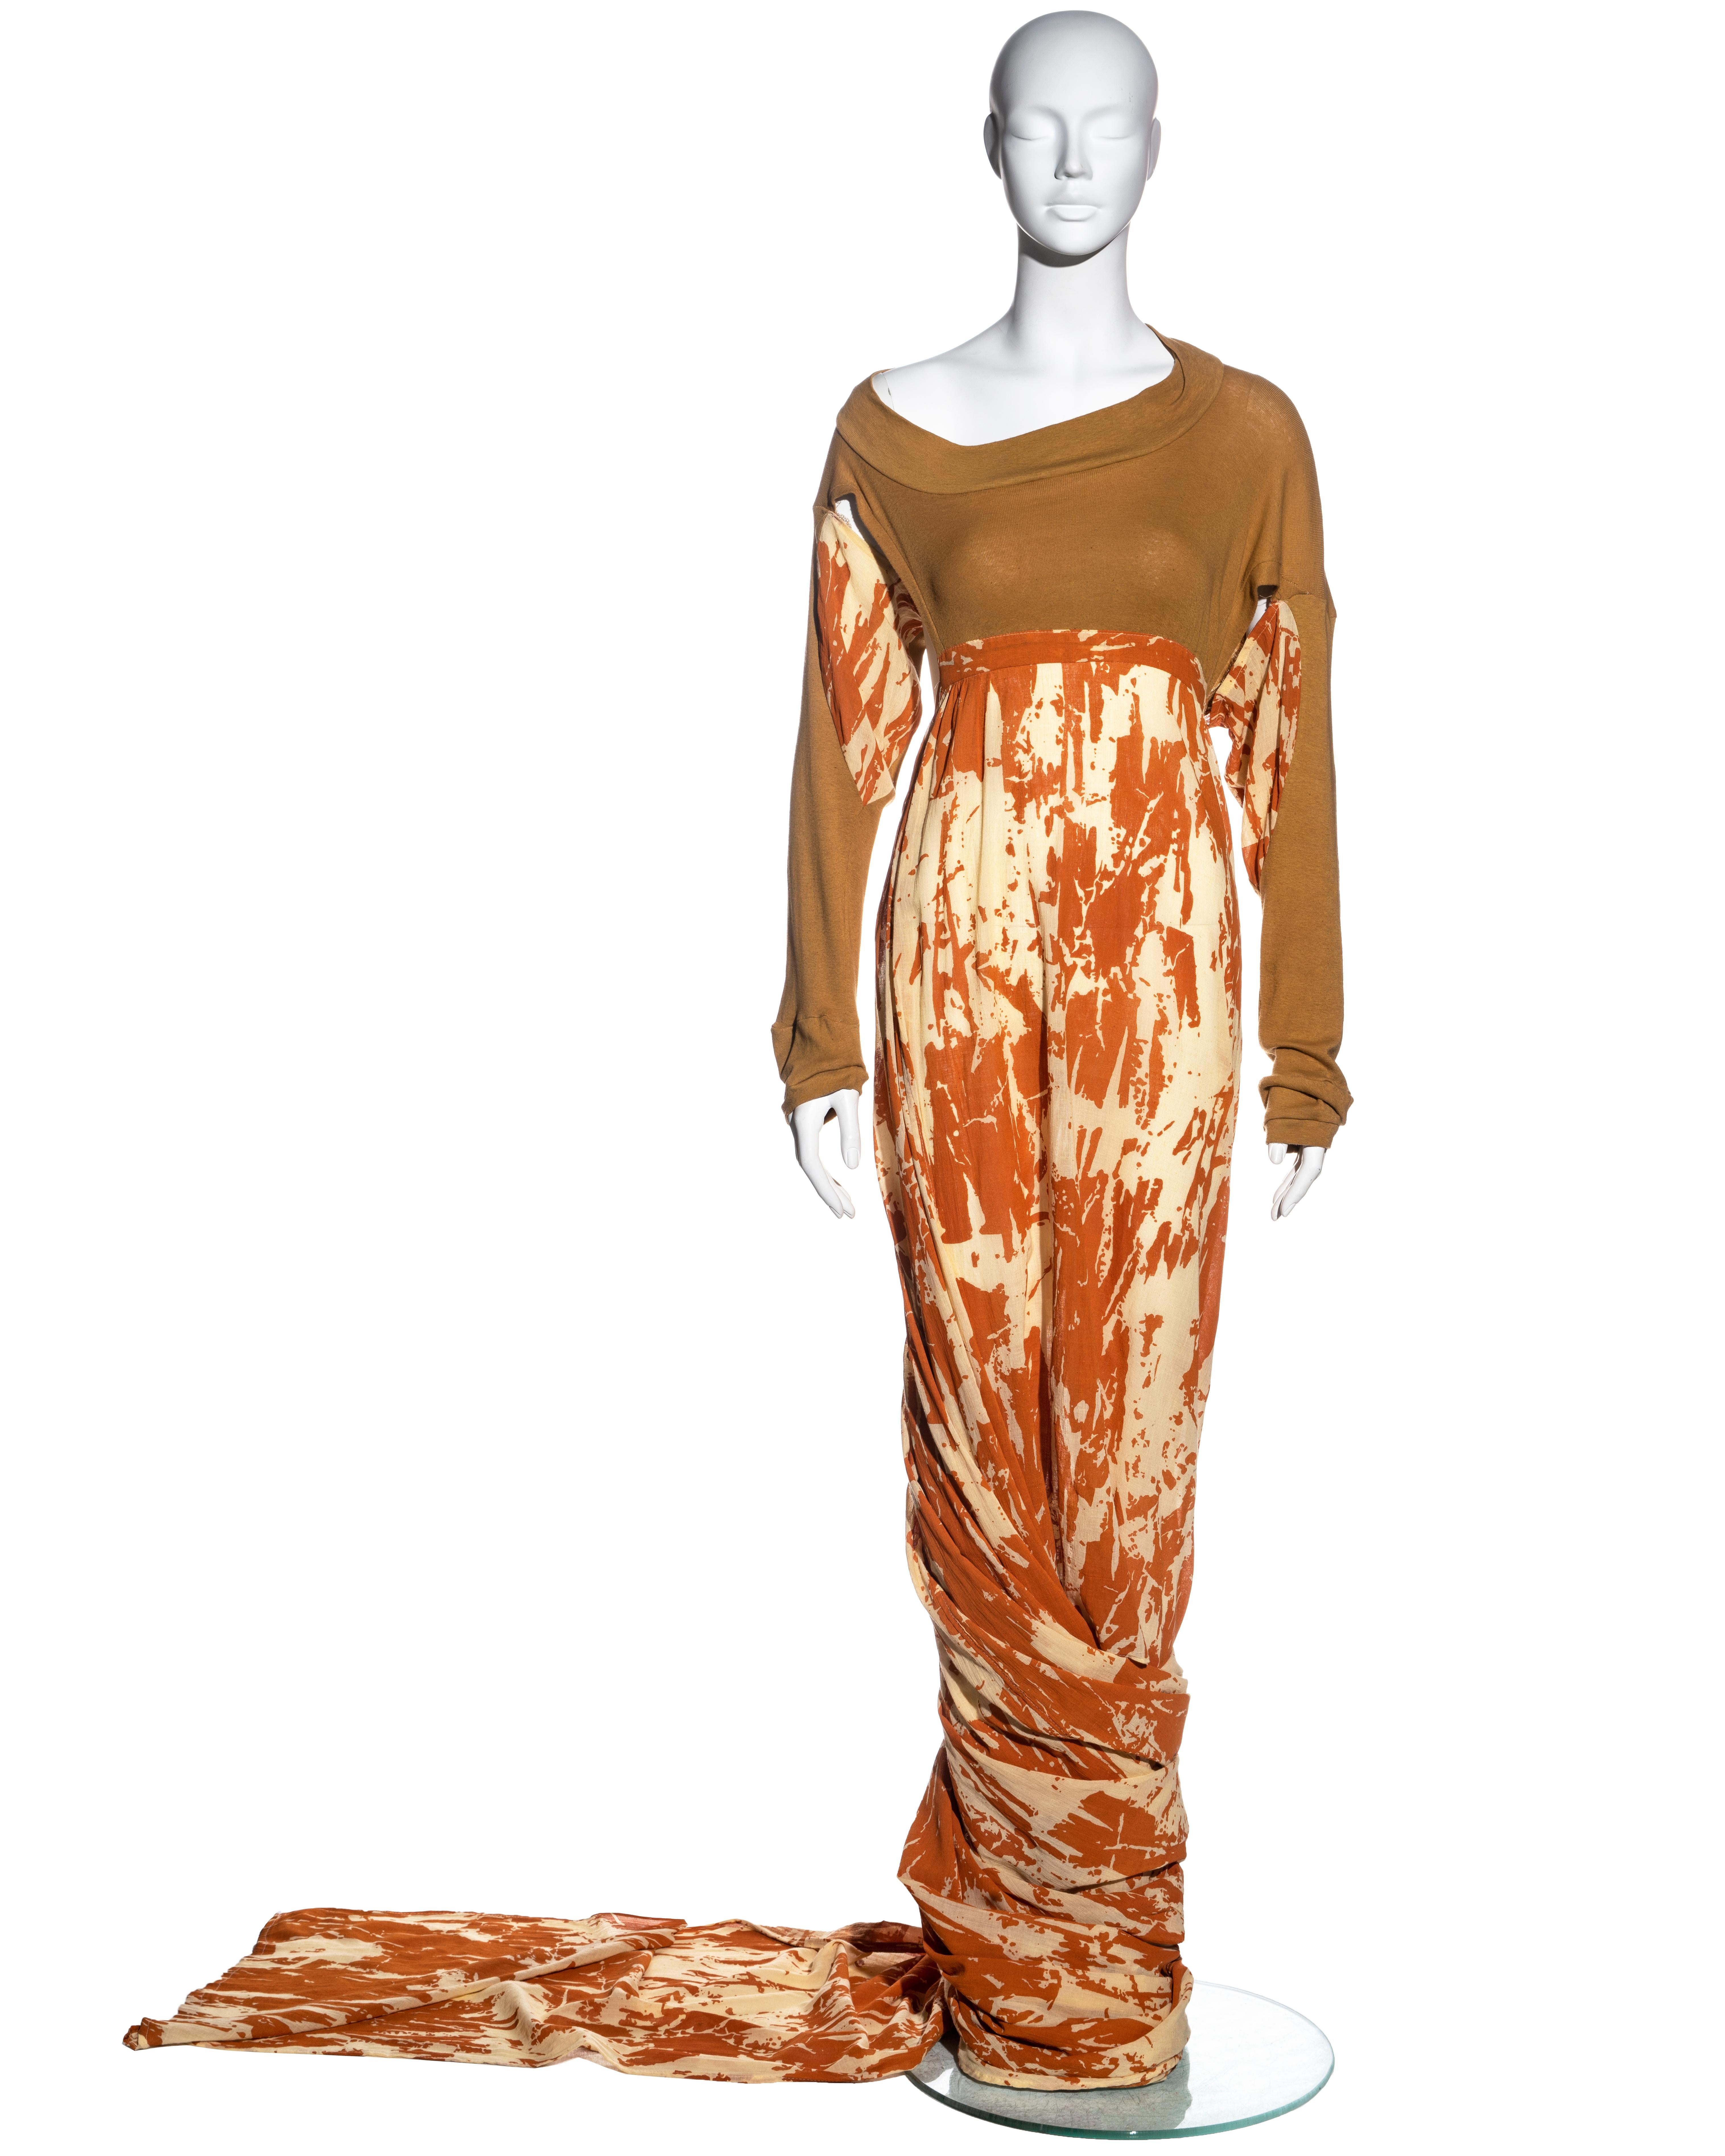 ▪ Ein seltenes Worlds End Toga-Kleid 
▪ Entworfen von Vivienne Westwood und Malcolm McLaren 
▪ Oberteil aus Baumwoll-Jersey
▪ Offene Seiten mit Bändern in der Taille 
▪ Asymmetrische Ärmel 
▪ Cremefarbener und orangefarbener, bedruckter, bodenlanger